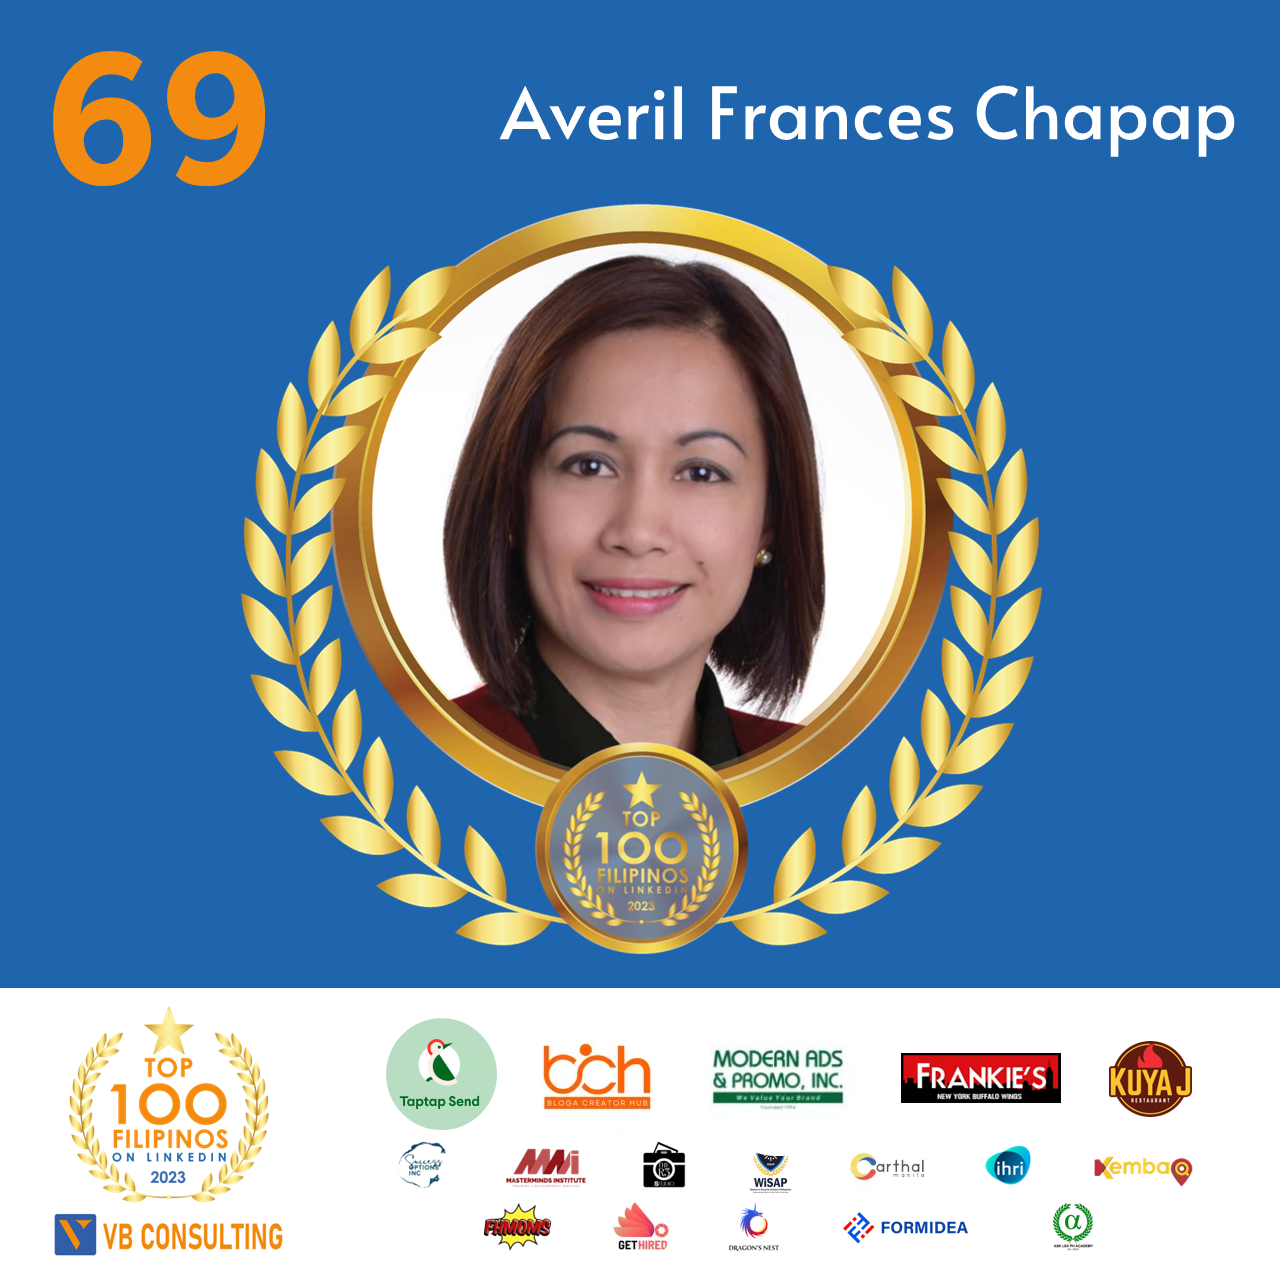 Averil Frances Chapap